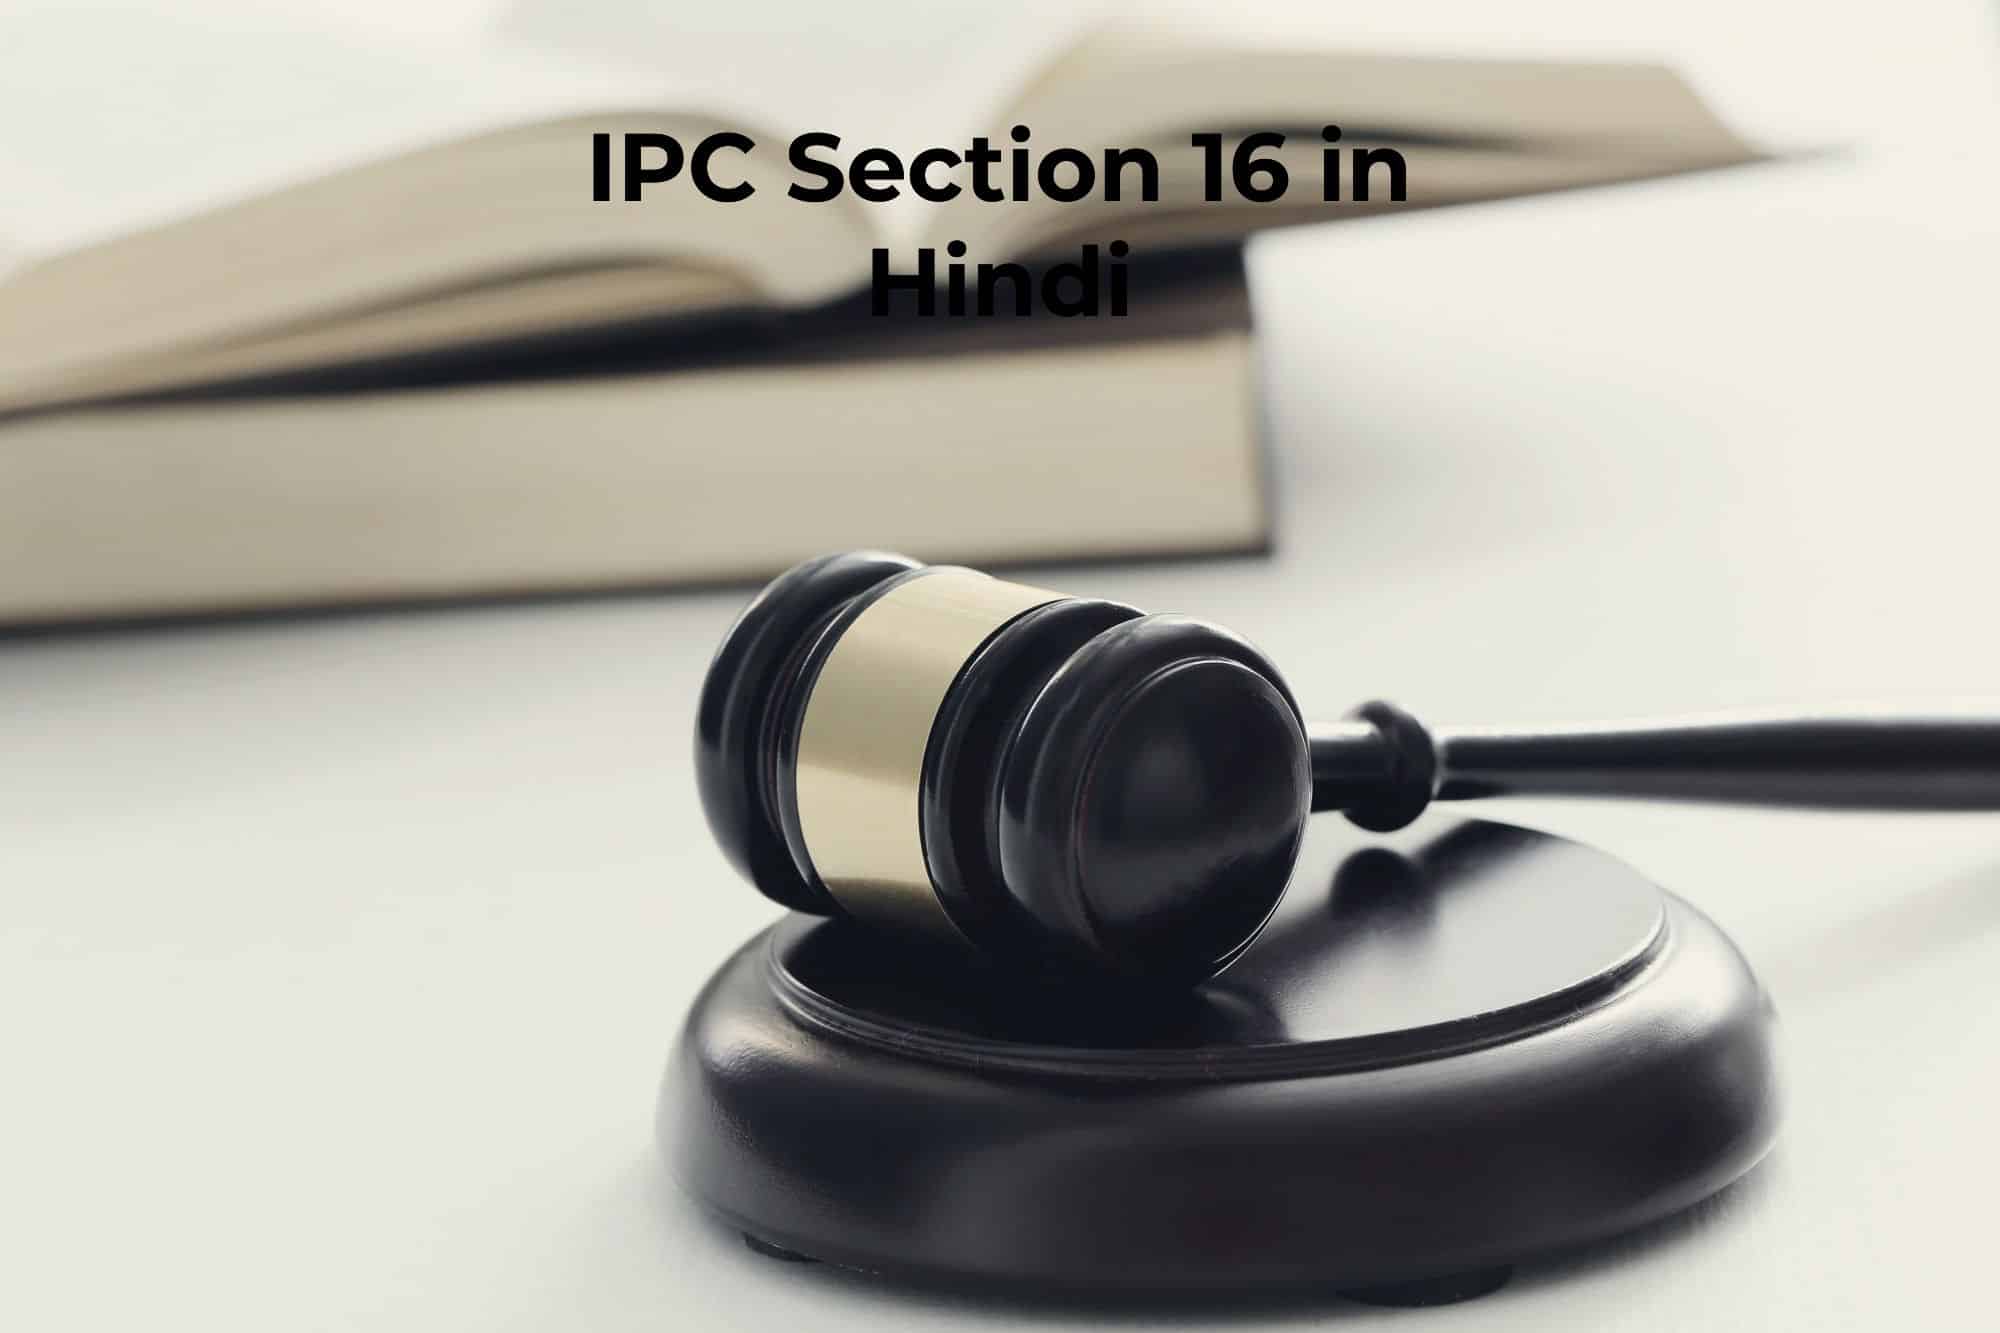 आईपीसी धारा 16 क्या है?, IPC Section 16 in Hindi